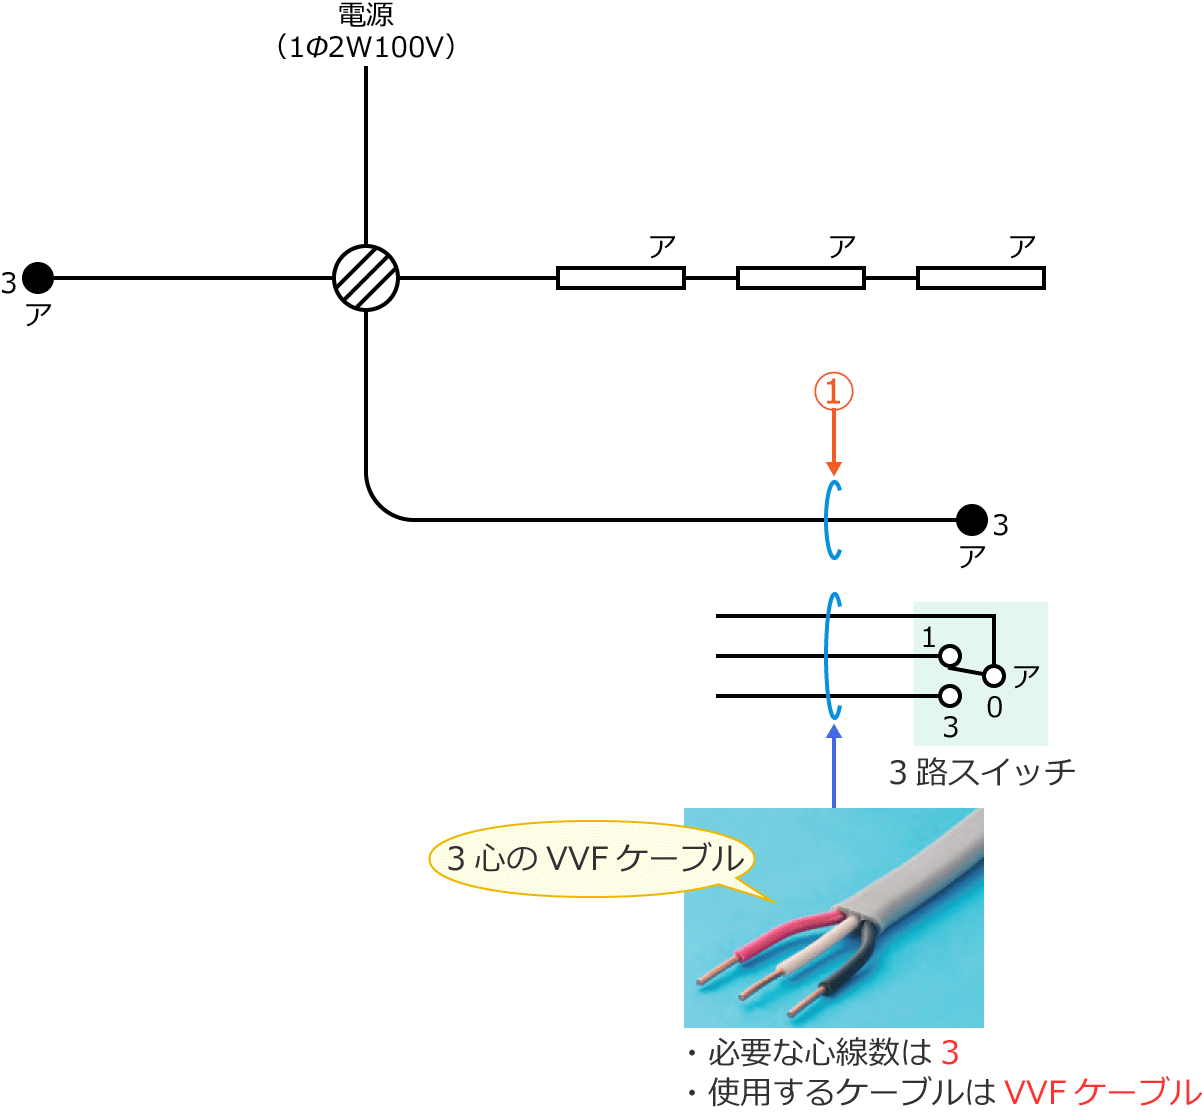 問題4の複線図と配線工事に使用するケーブル（3心のVVFケーブル）